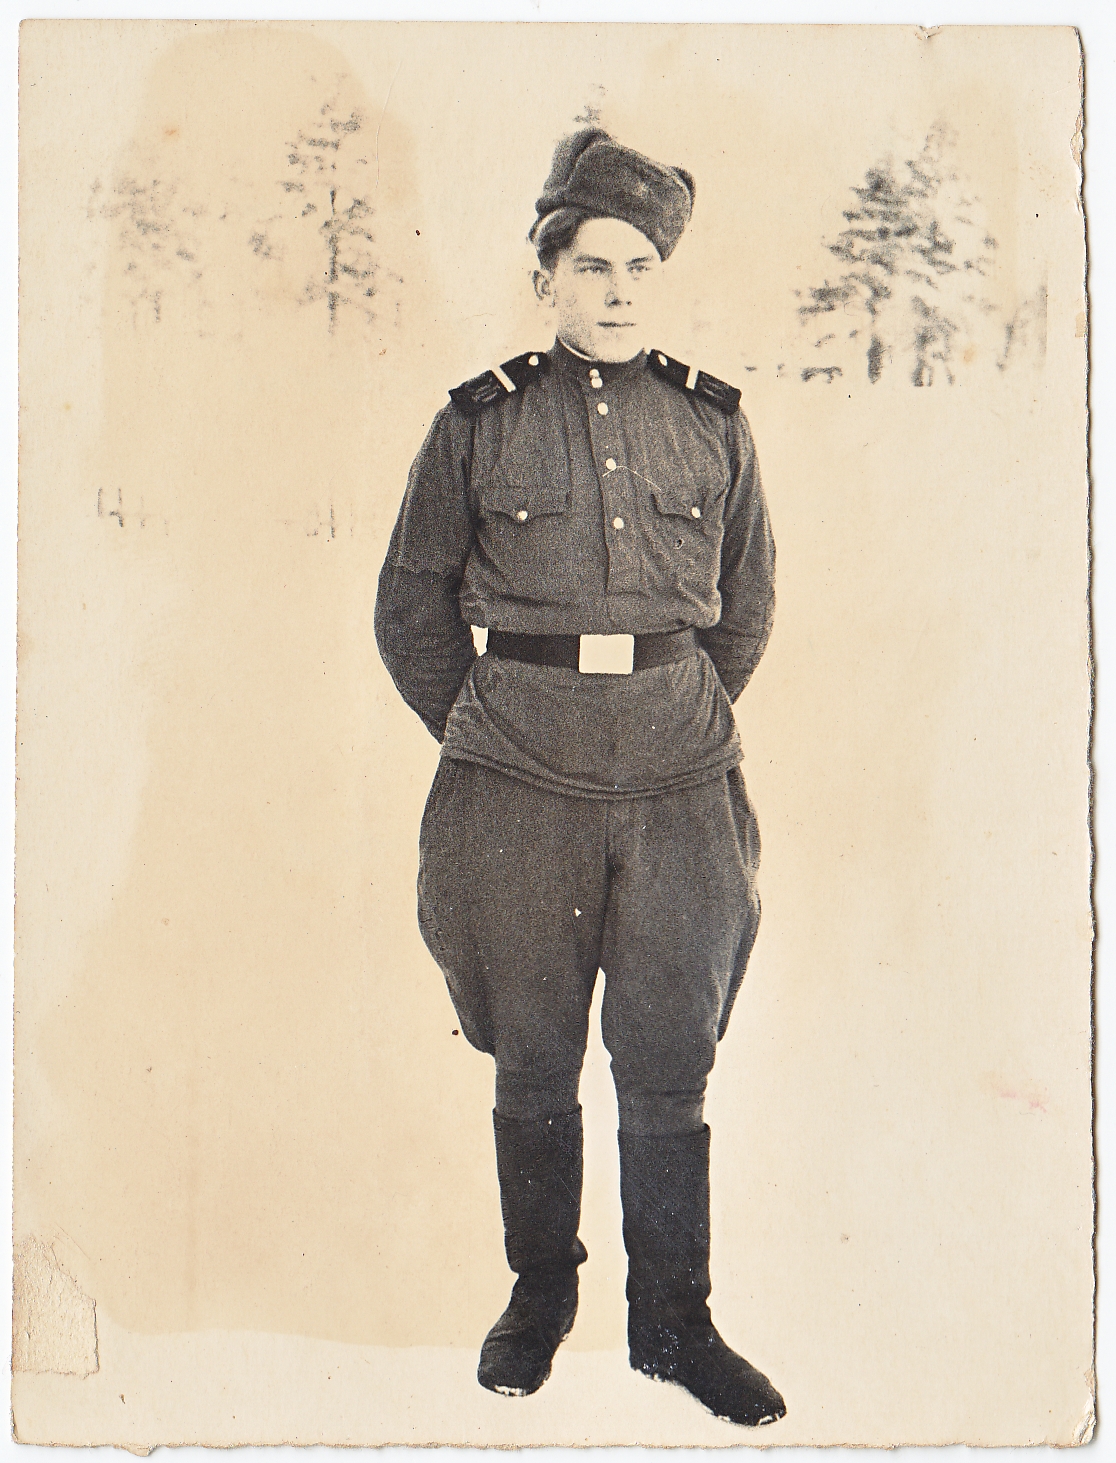 Onos Banelytės-Indrišiūnienės vyro Vaclovo draugas Jonas armijoje. Severomorskas, Rusija